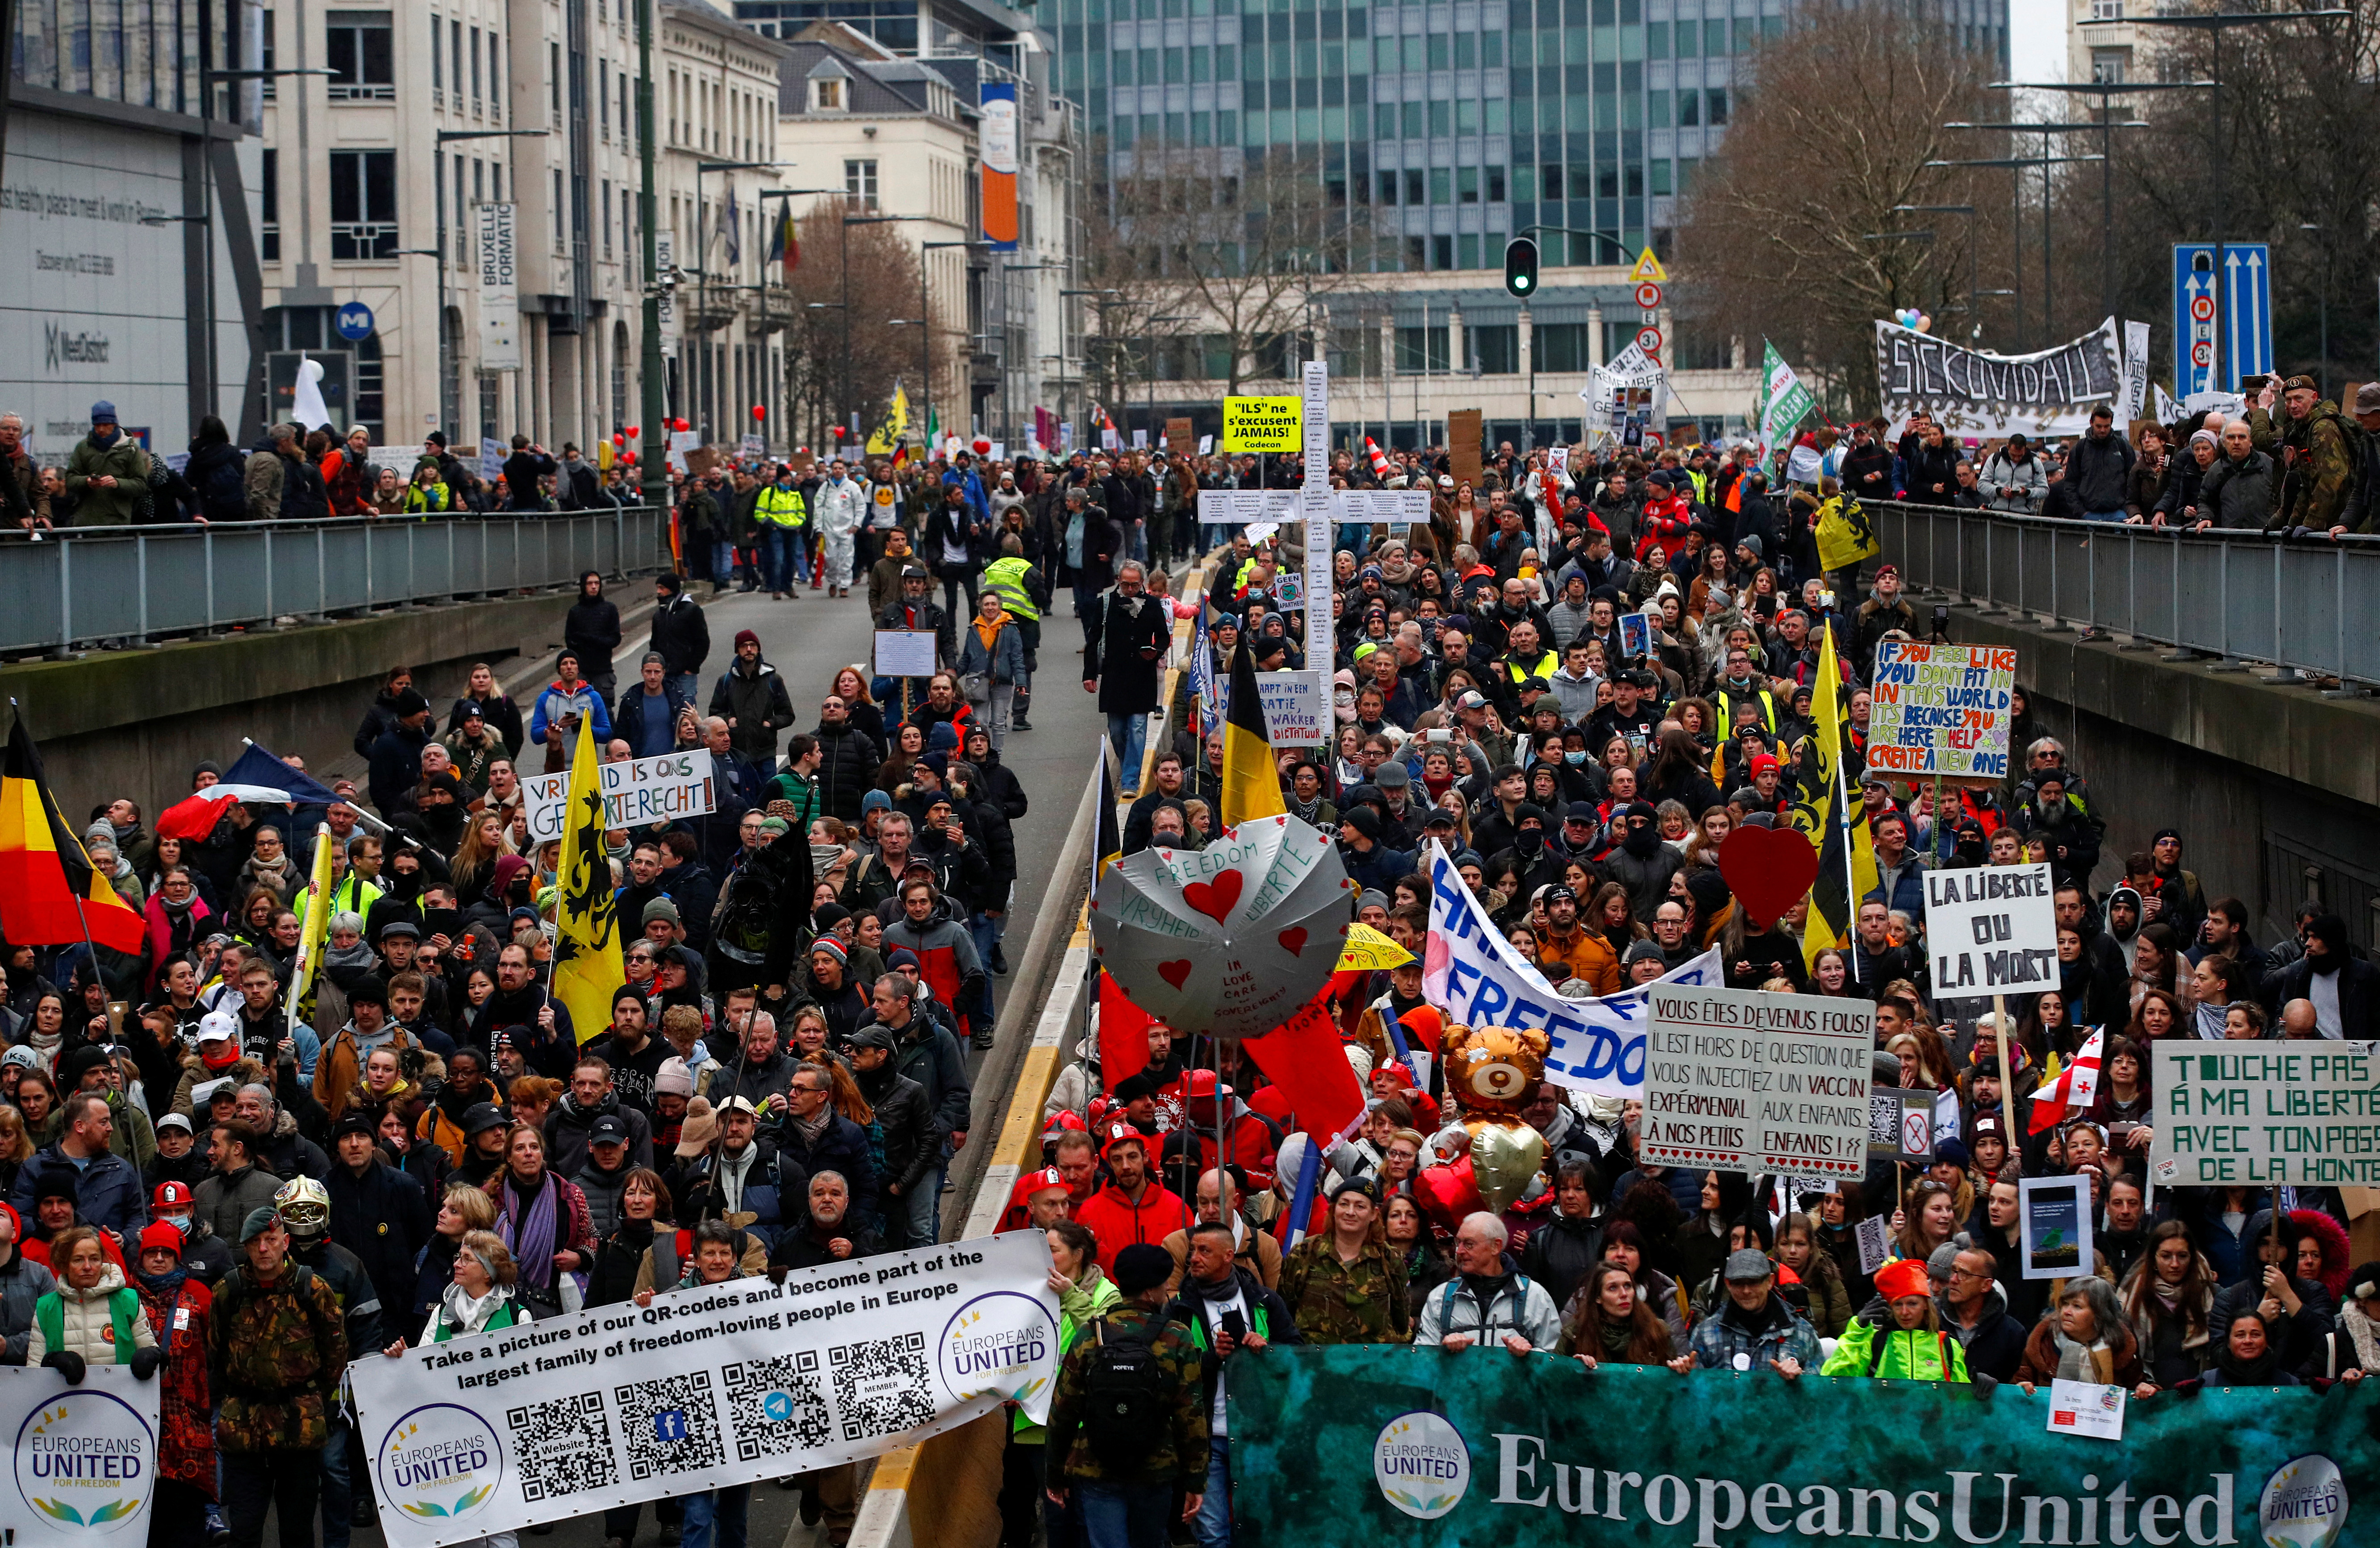 Njerëzit marrin pjesë në një demonstratë kundër kufizimeve të qeverisë belge të vendosura për të frenuar përhapjen e sëmundjes së koronavirusit (COVID-19) në Bruksel, Belgjikë, 23 janar 2022. REUTERS/Johanna Geron